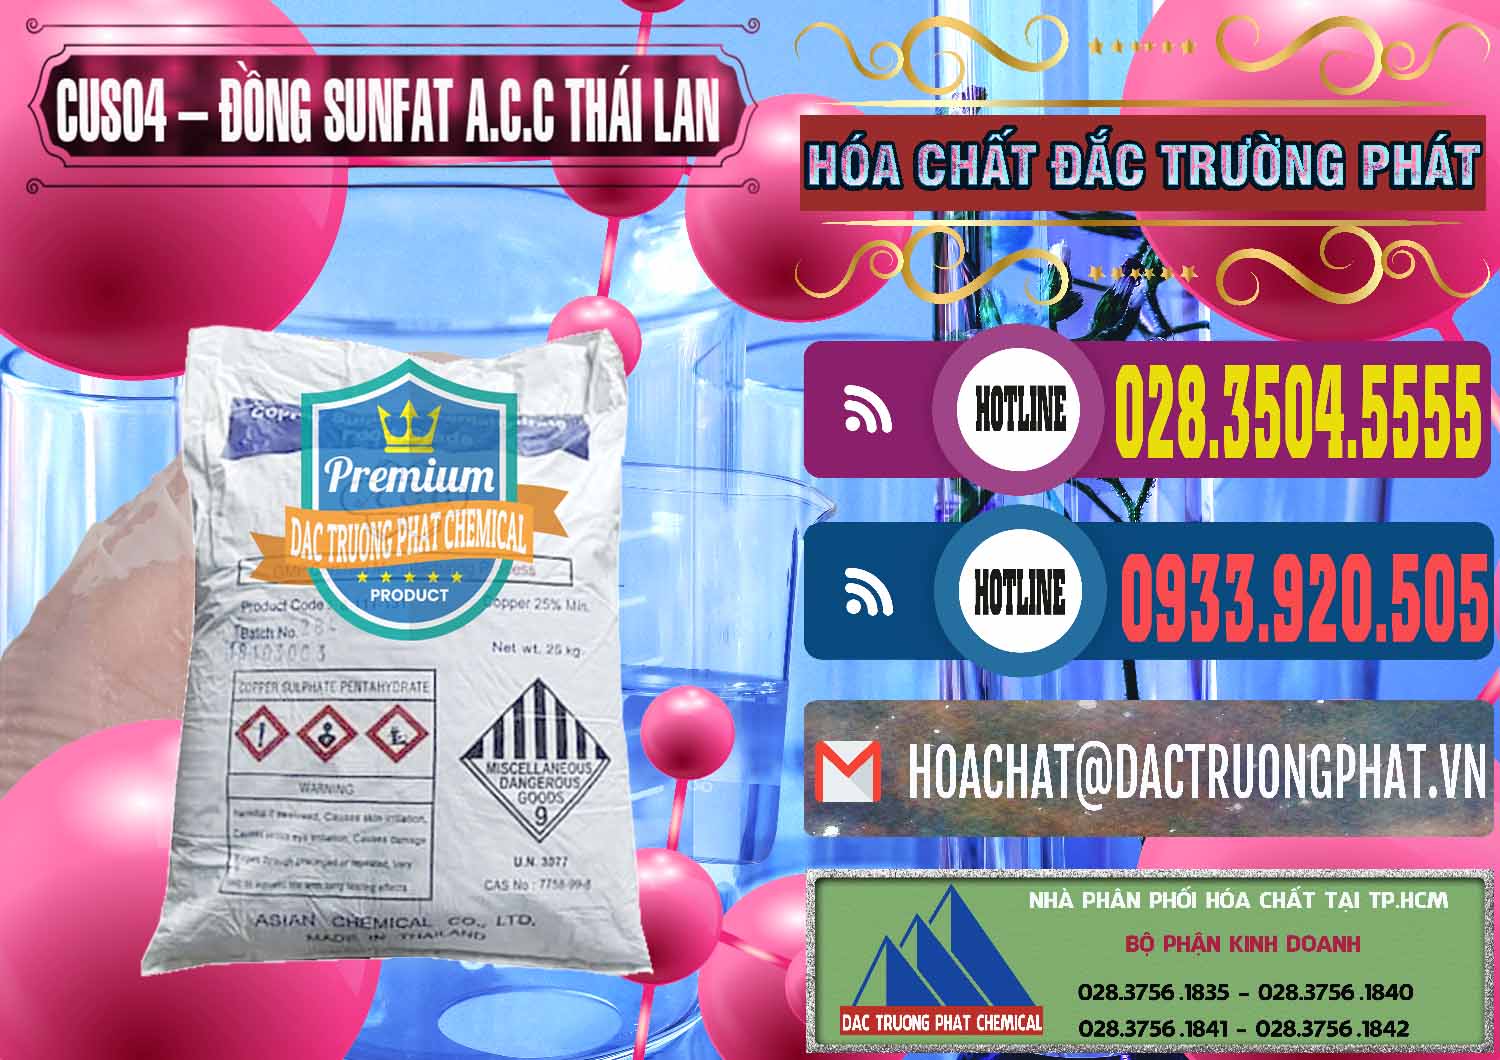 Công ty kinh doanh & bán CuSO4 – Đồng Sunfat A.C.C Thái Lan - 0249 - Nhà phân phối và bán hóa chất tại TP.HCM - muabanhoachat.com.vn